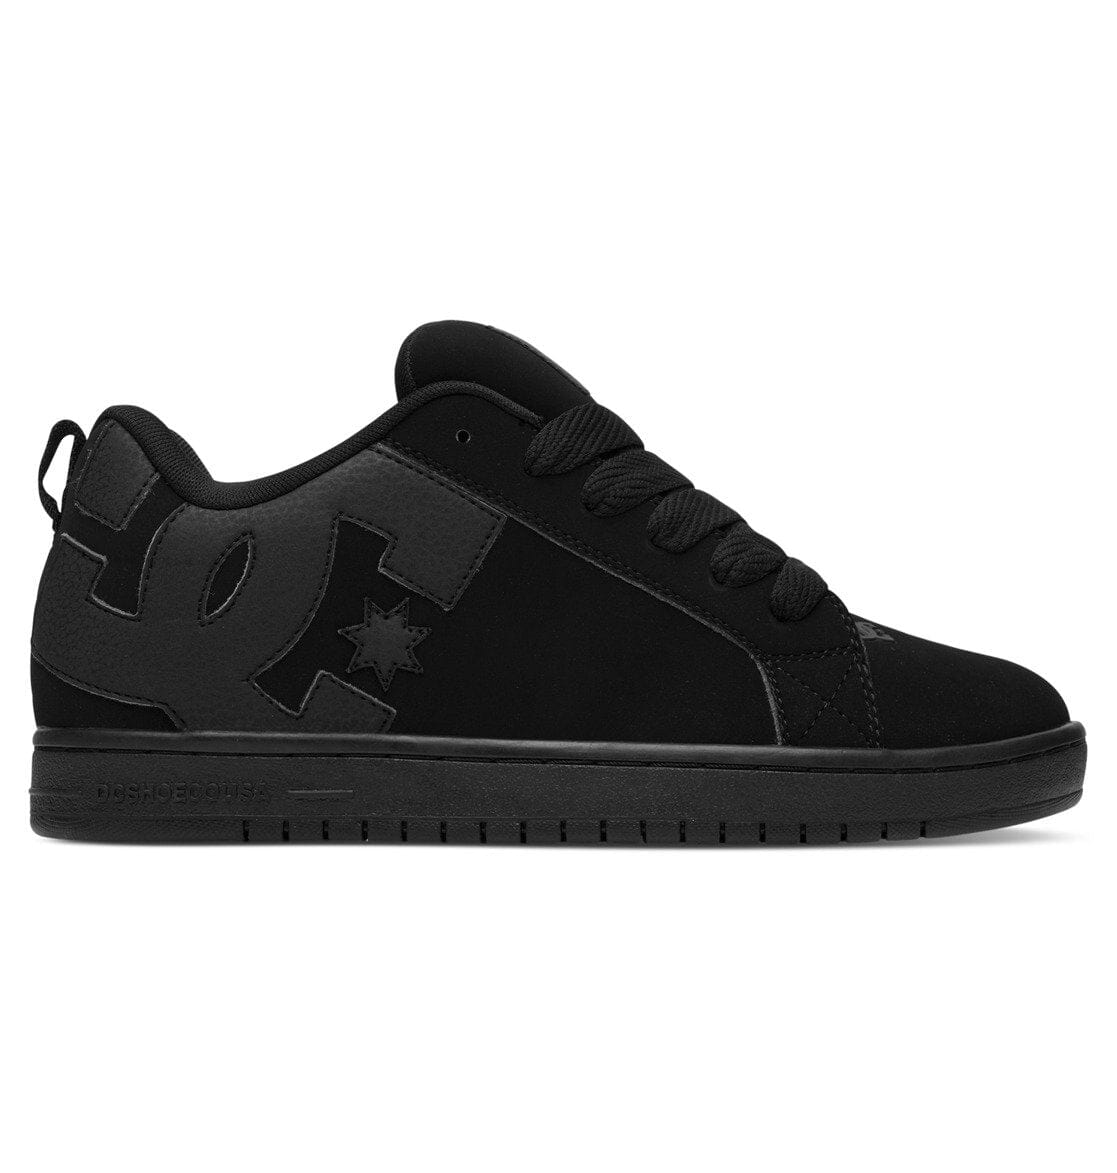 DC Court Graffik Shoes Black/Black/Black Men's Skate Shoes DC 